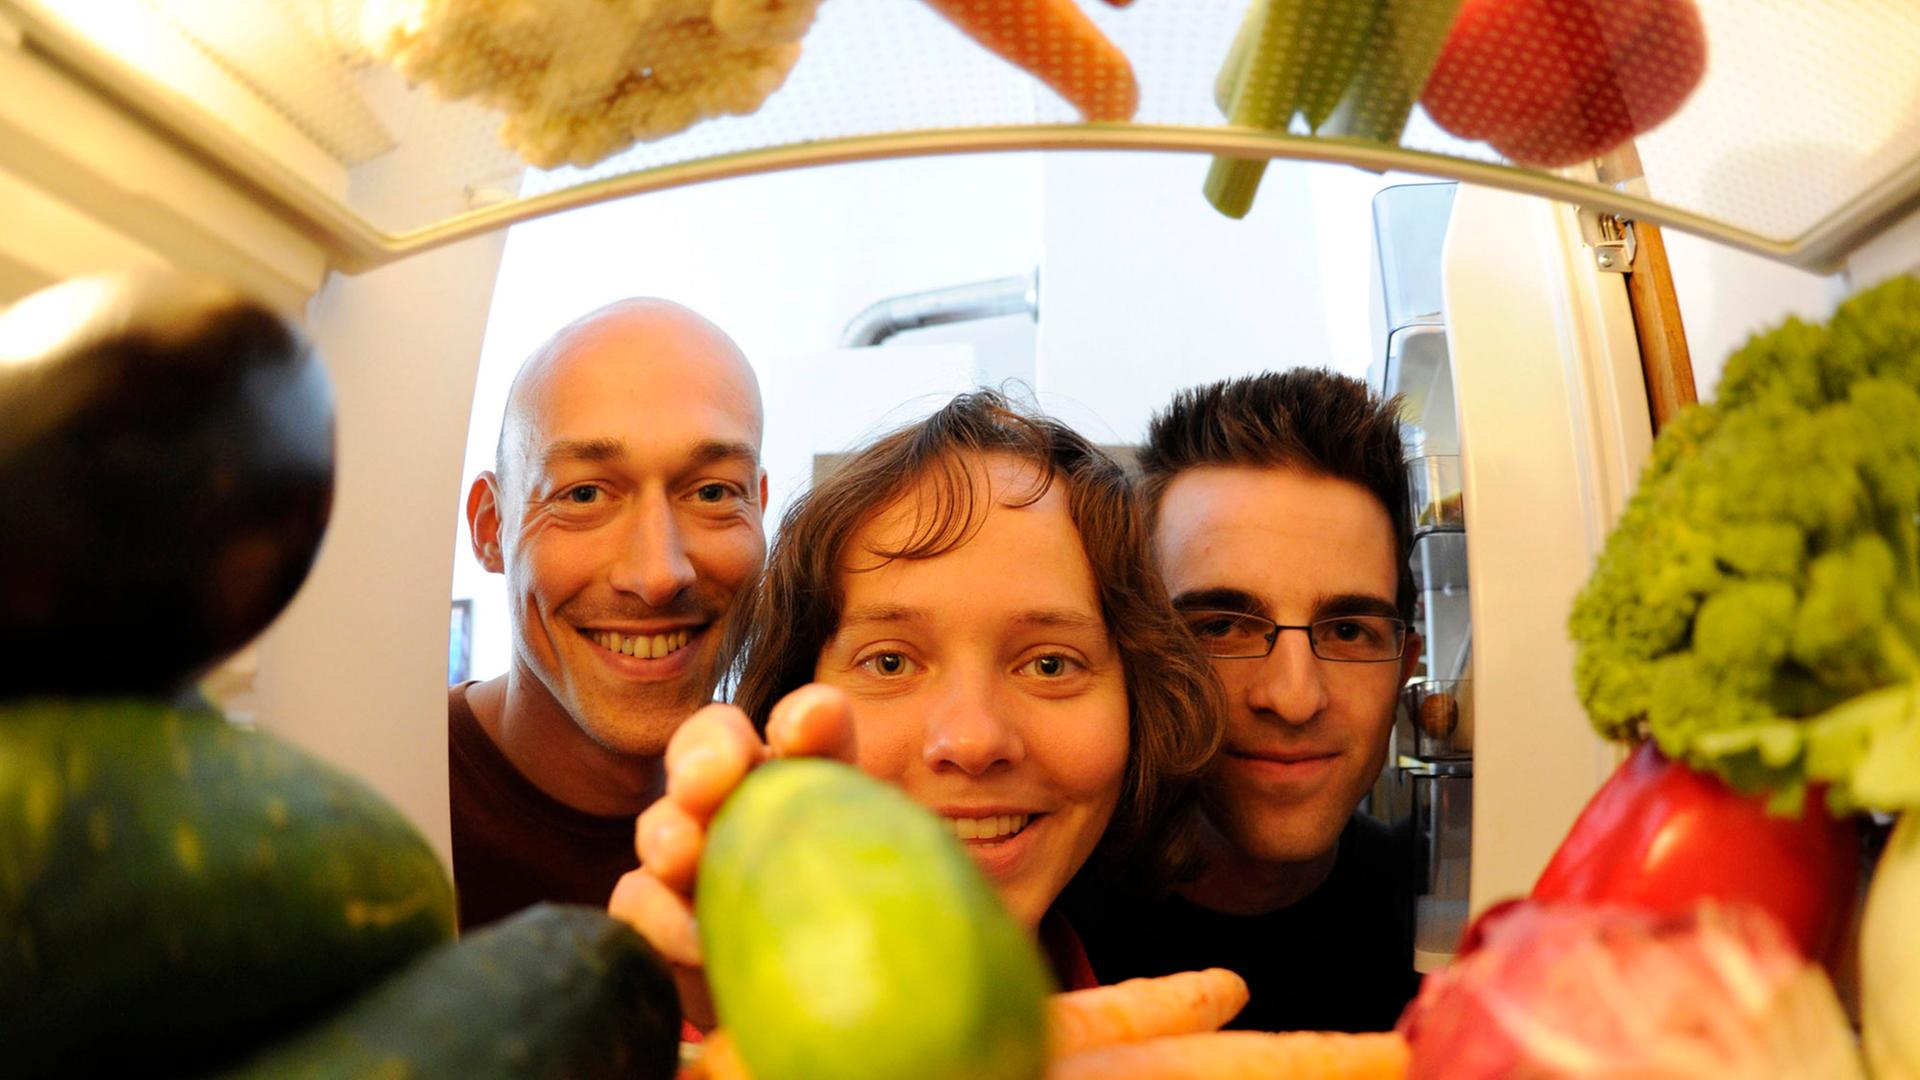 Bild aus einem Kühlschrank fotografiert: Drei junge Menschen drängen sich vor der Tür; eine Frau greift nach Gemüse im Kühlschrank.